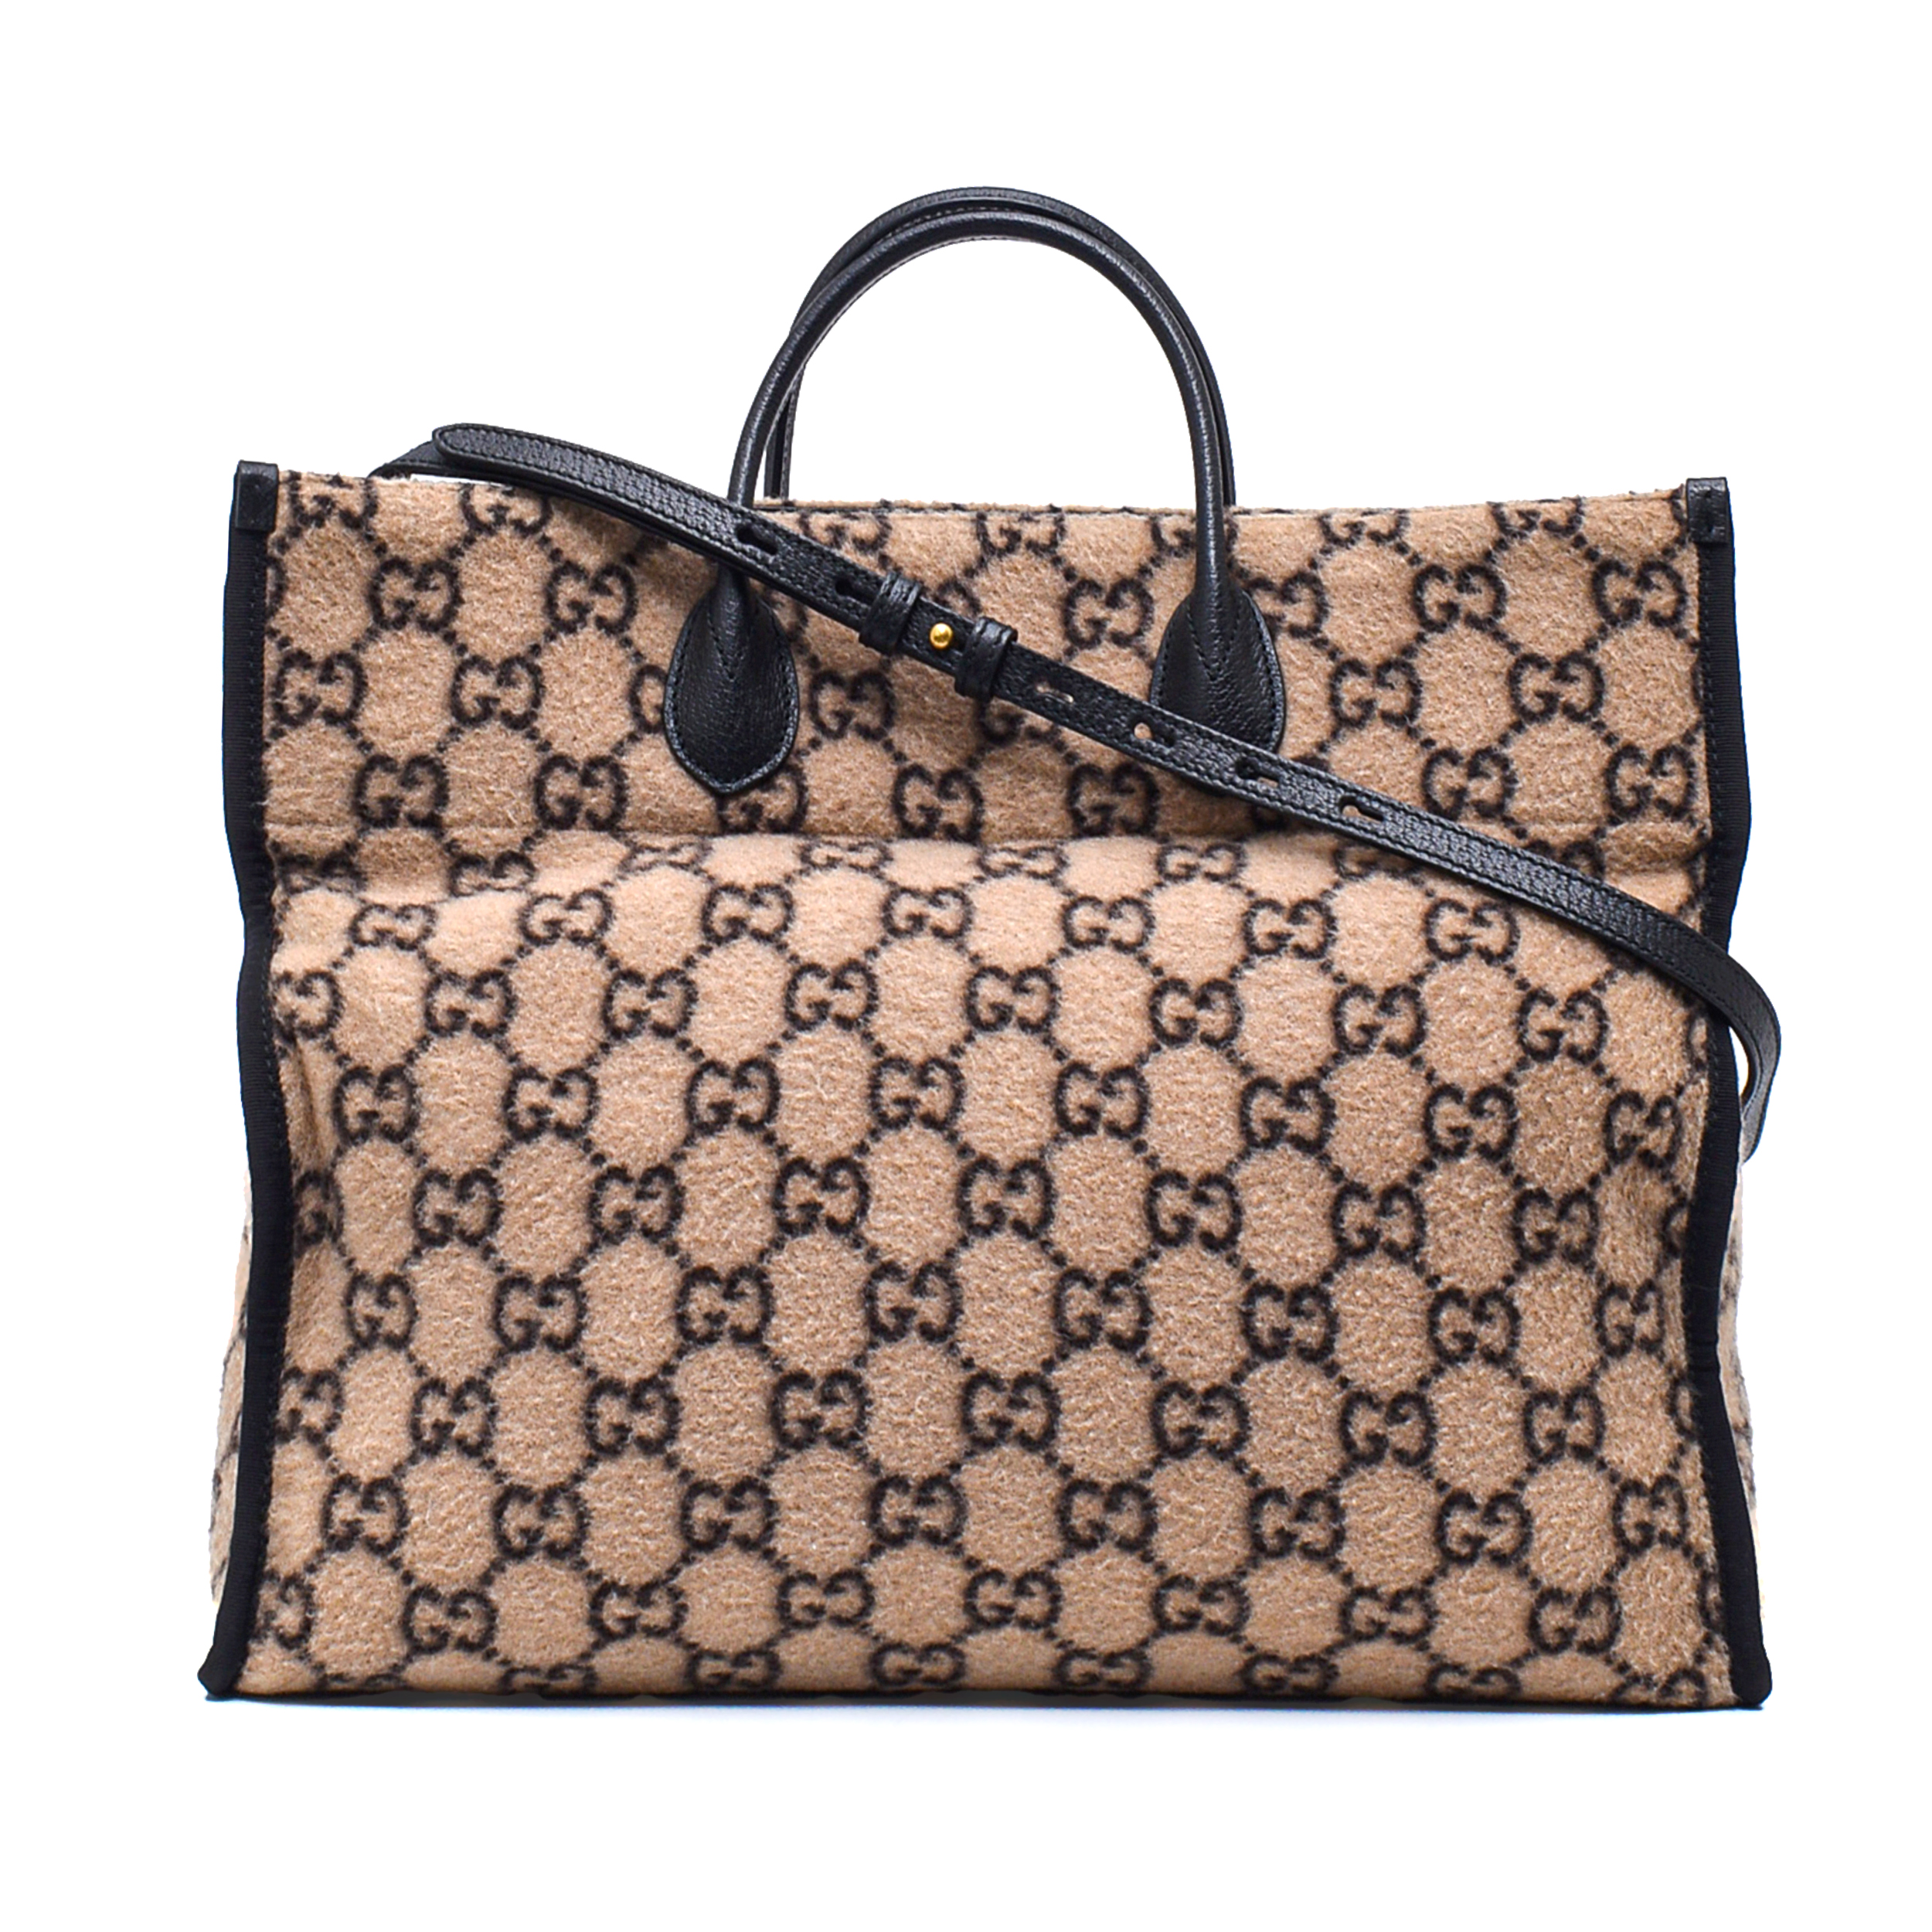 Gucci - Beige Ebony Covered Wool GG Supreme Large Tote Bag